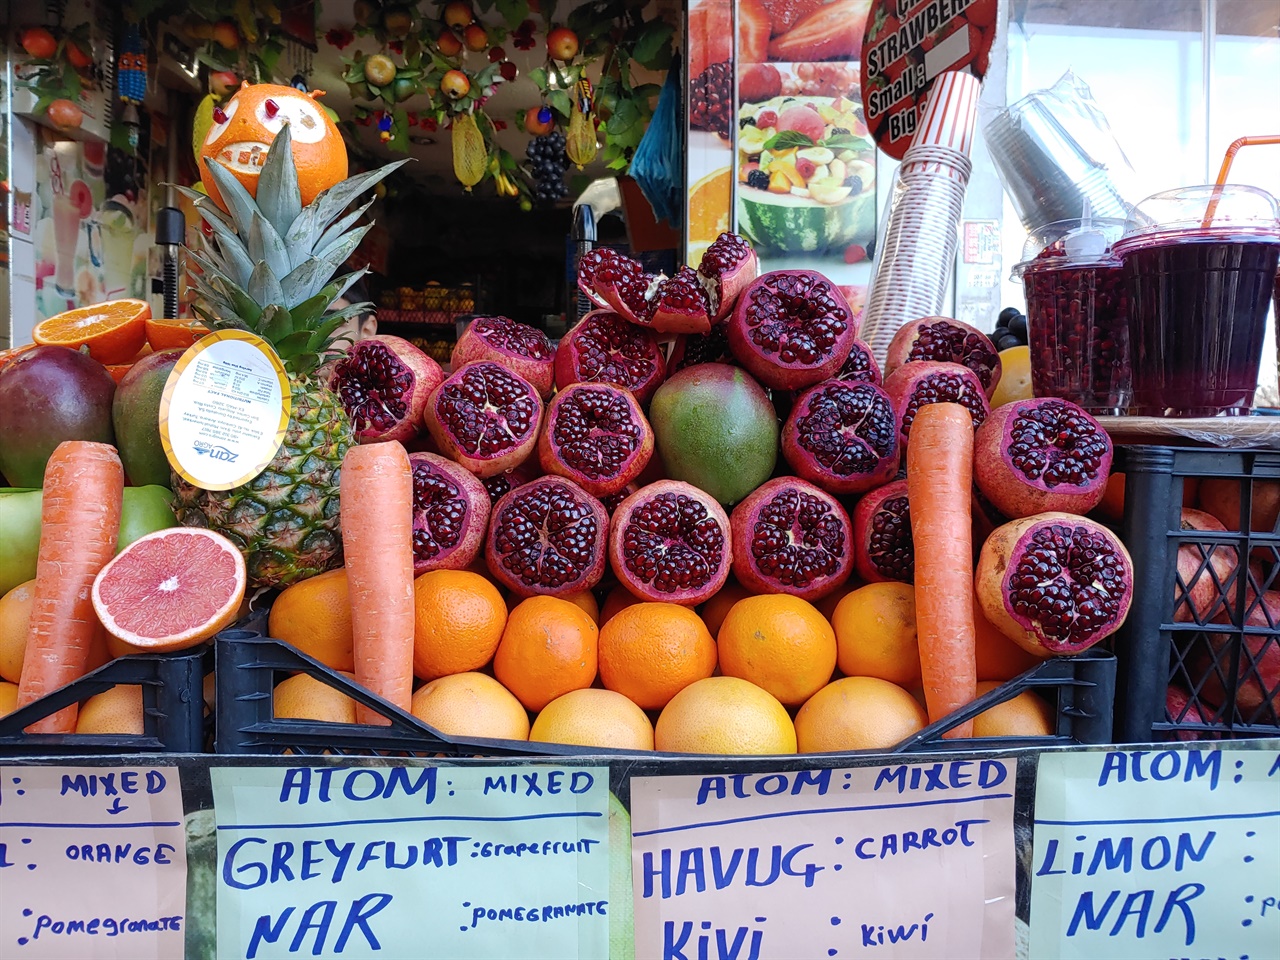 터키 겨울 과일은 오렌지와 석류가 유명하다. 